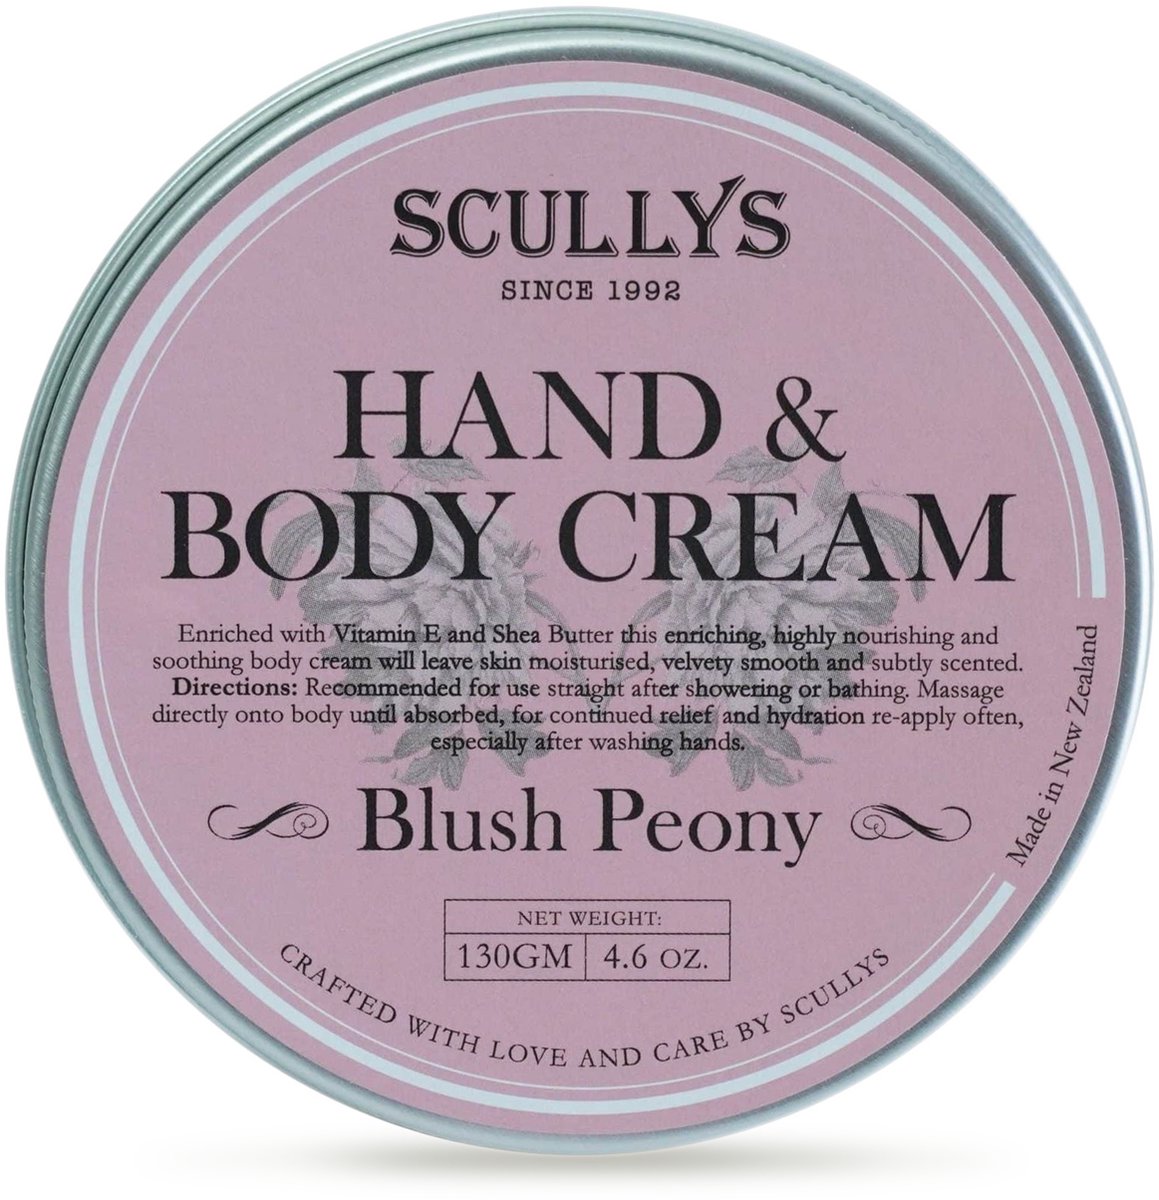 Hand & Bodycrème - Pioenroos, Tuberoos & Jasmijn Etherische Oliën - Huidverzorging